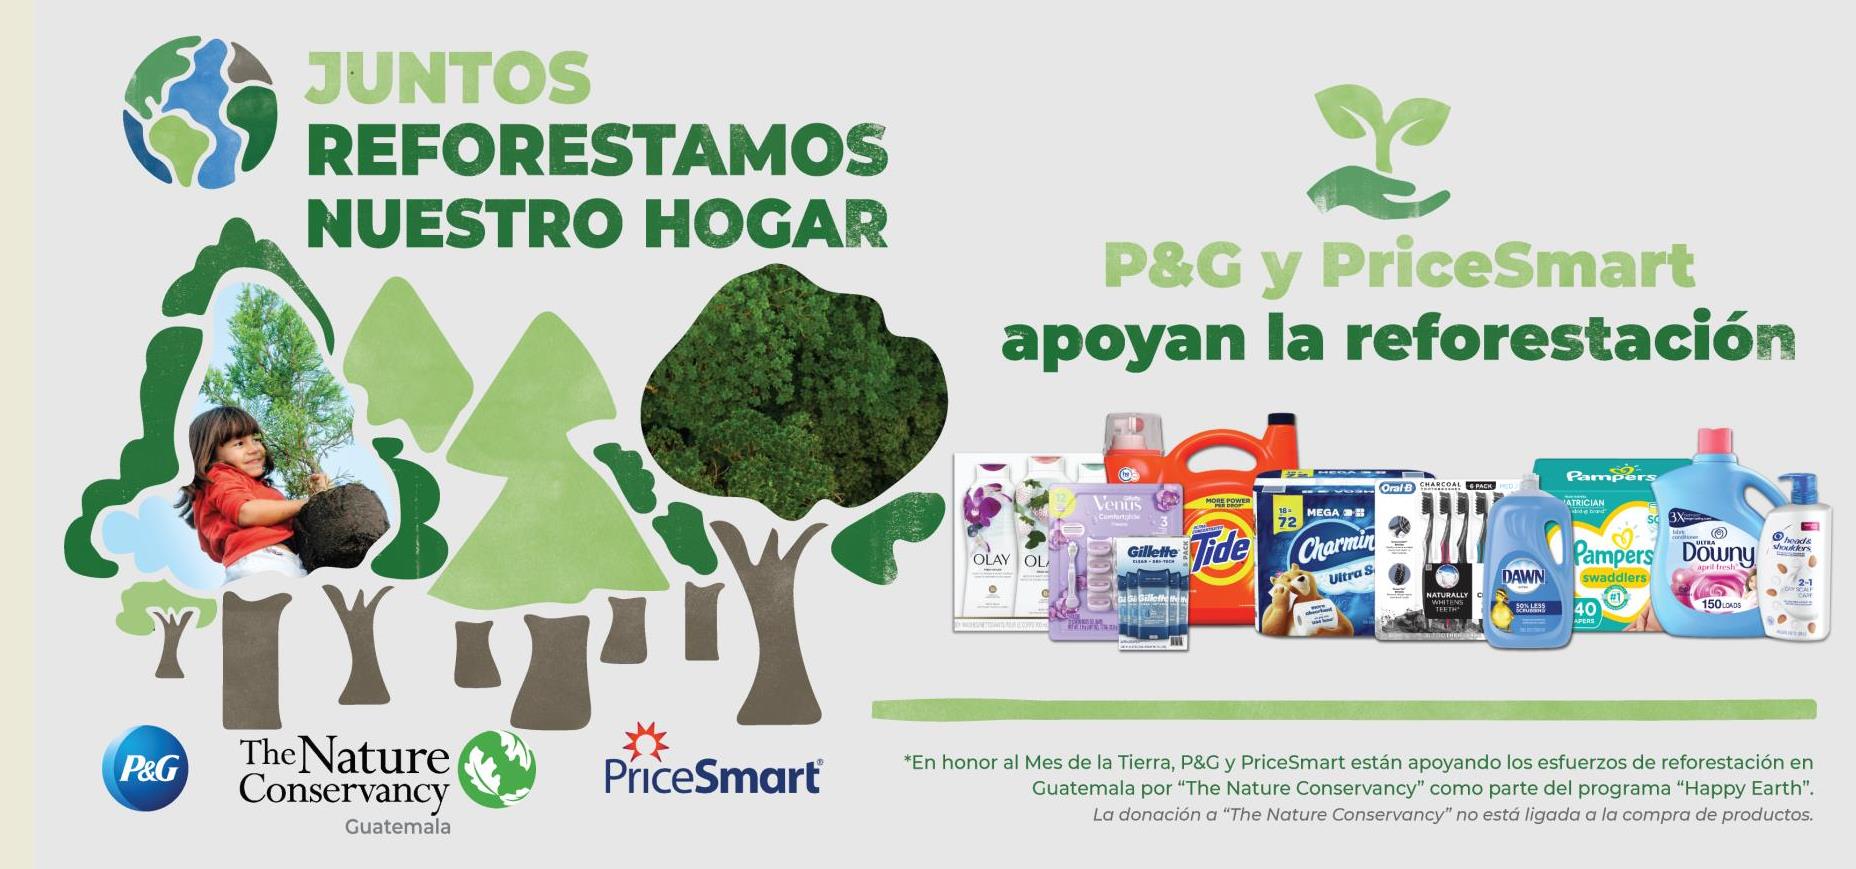 P&G y PriceSmart se unen en iniciativa de reforestación para Guatemala y Colombia